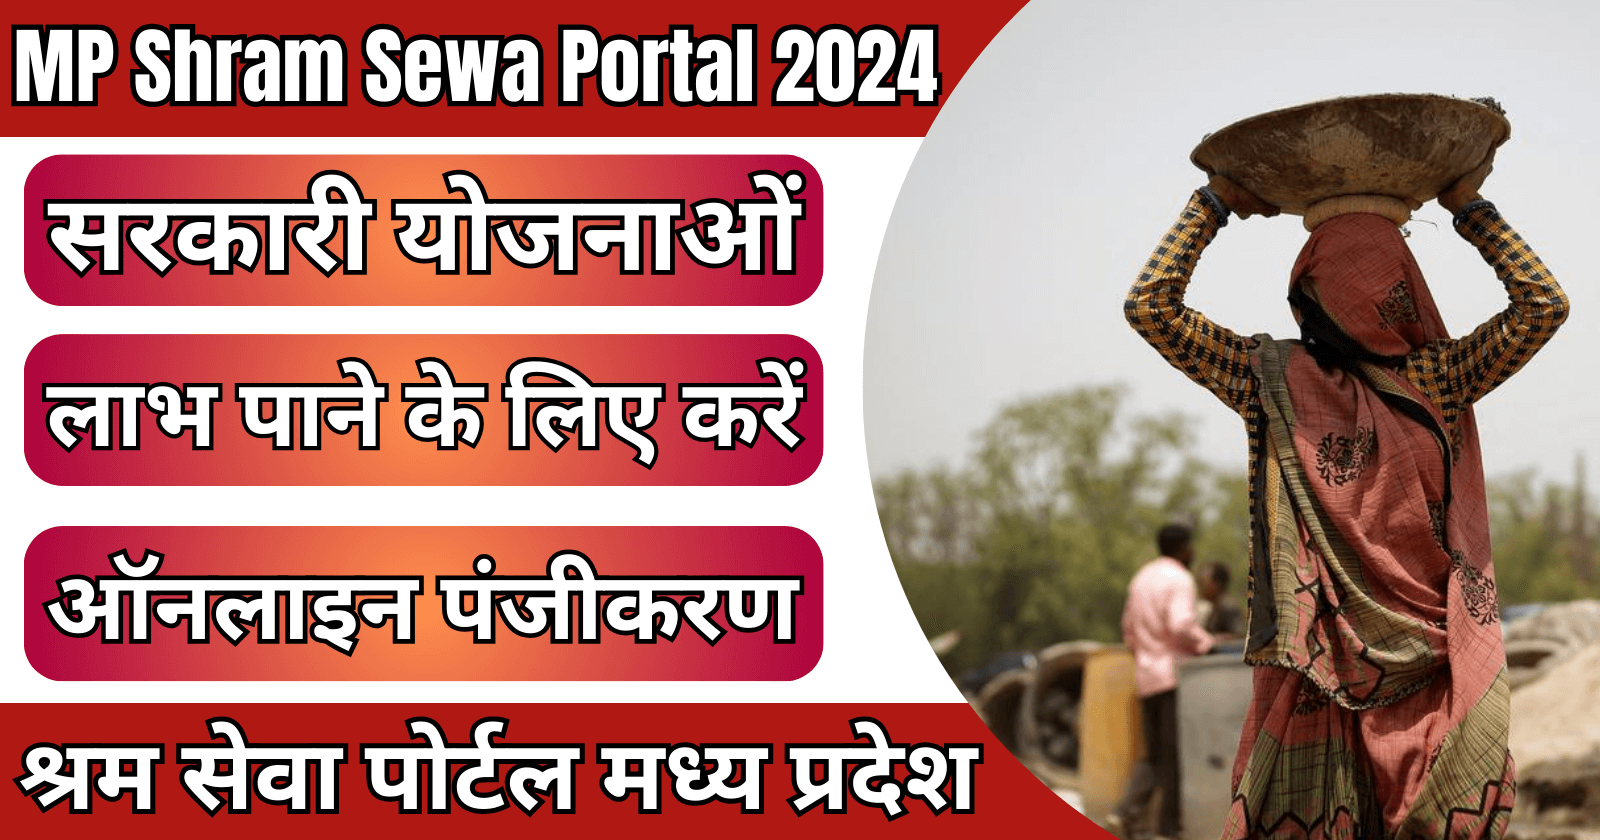 MP Shram Sewa Portal 2024